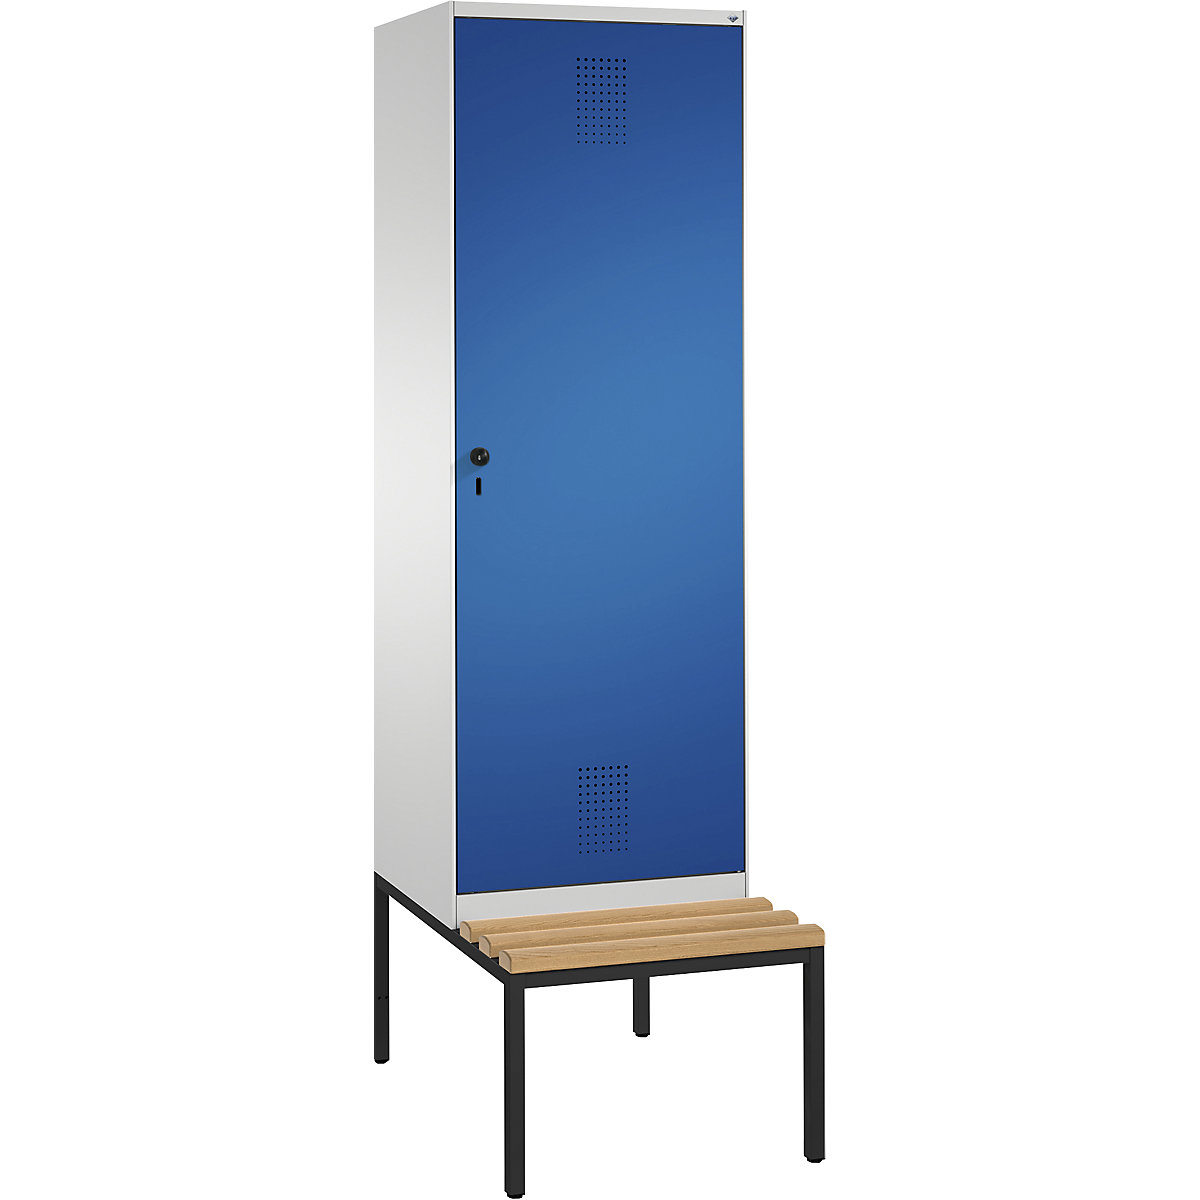 Šatní skříň s lavicí EVOLO s dveřmi přes 2 oddíly – C+P, 2 oddíly, 1 dveře, šířka oddílu 300 mm, světlá šedá / enciánová modrá-7